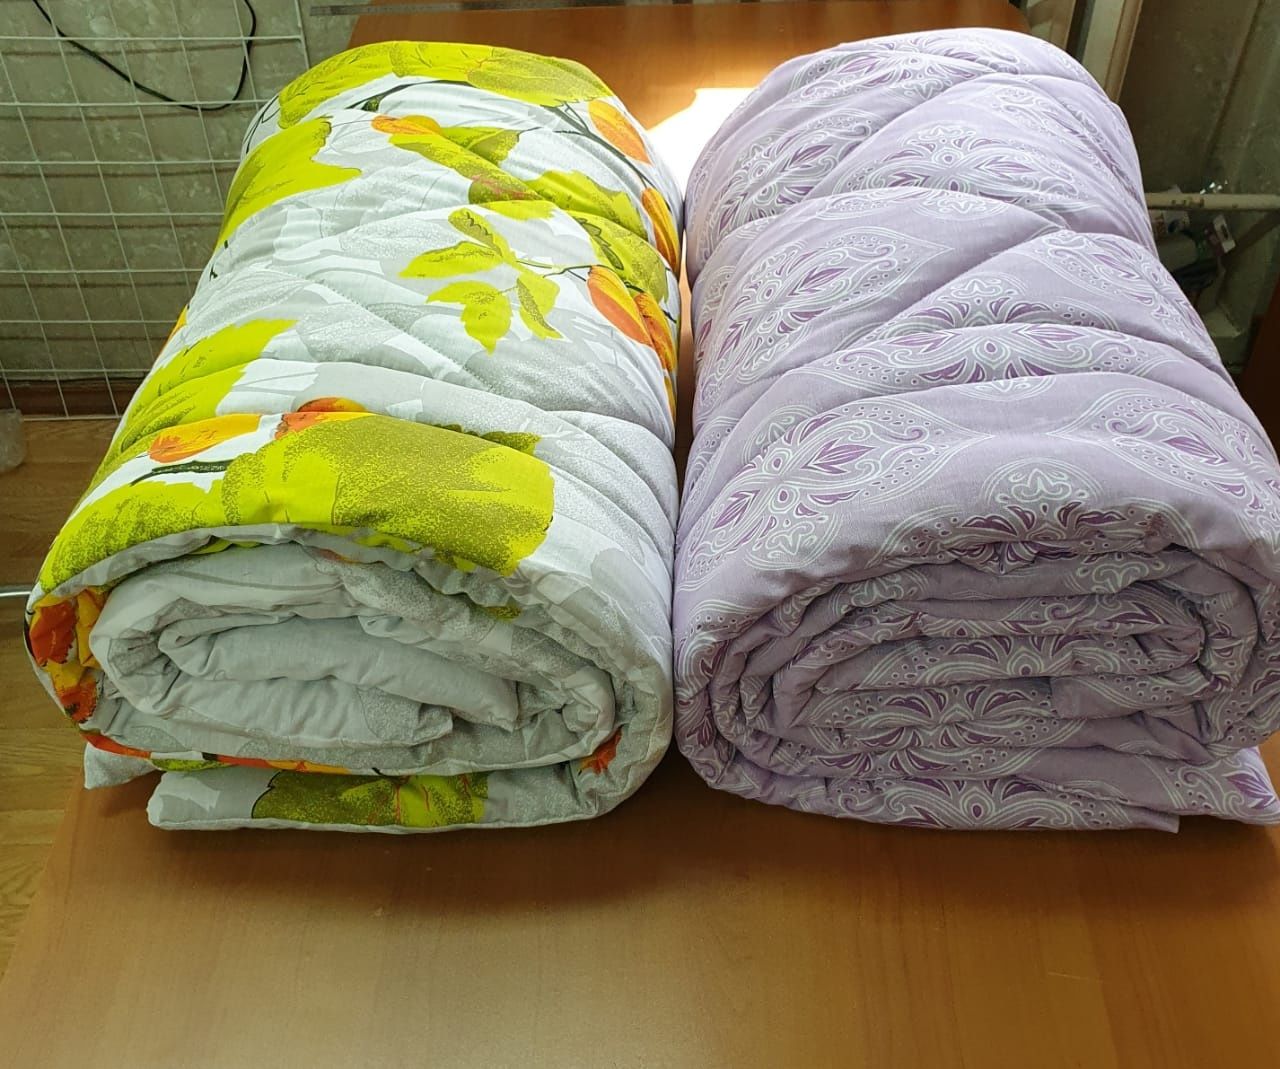 Реставрация одеял./ подушек/ матрасов/ рестоврация